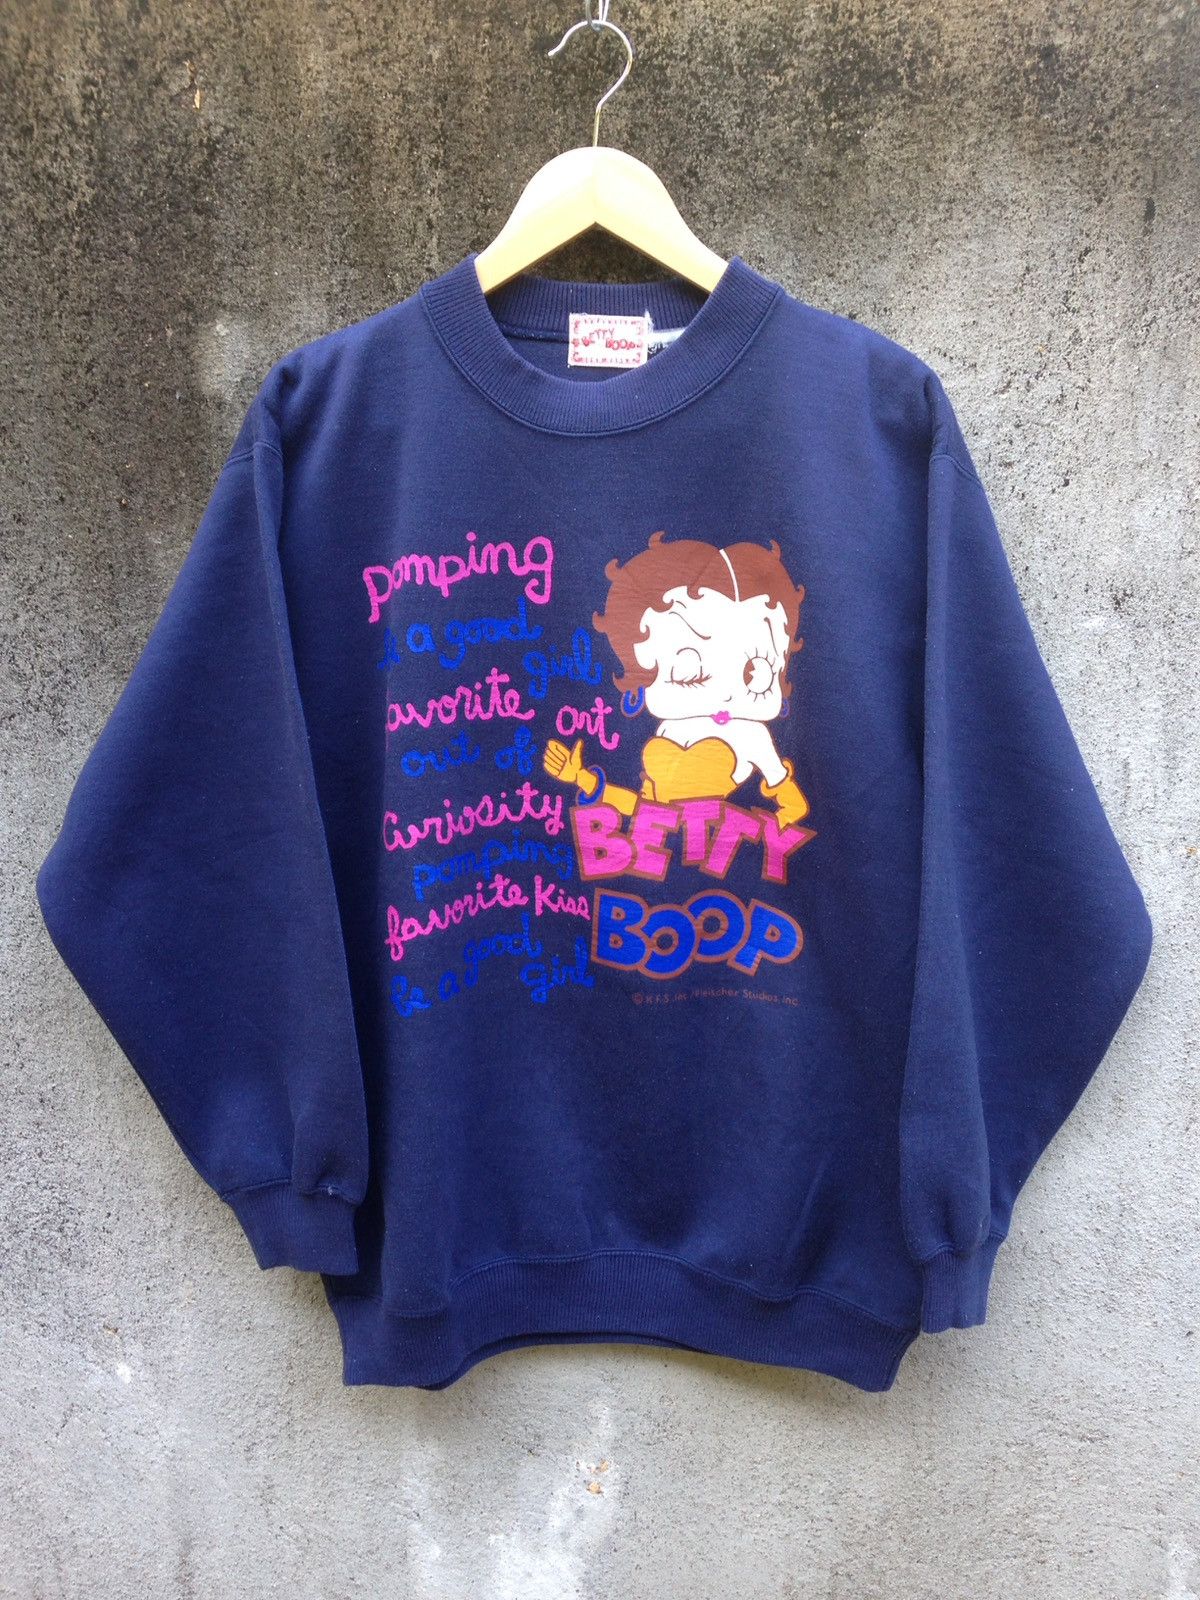 Vintage Sweatshirt Betty Boop | Grailed